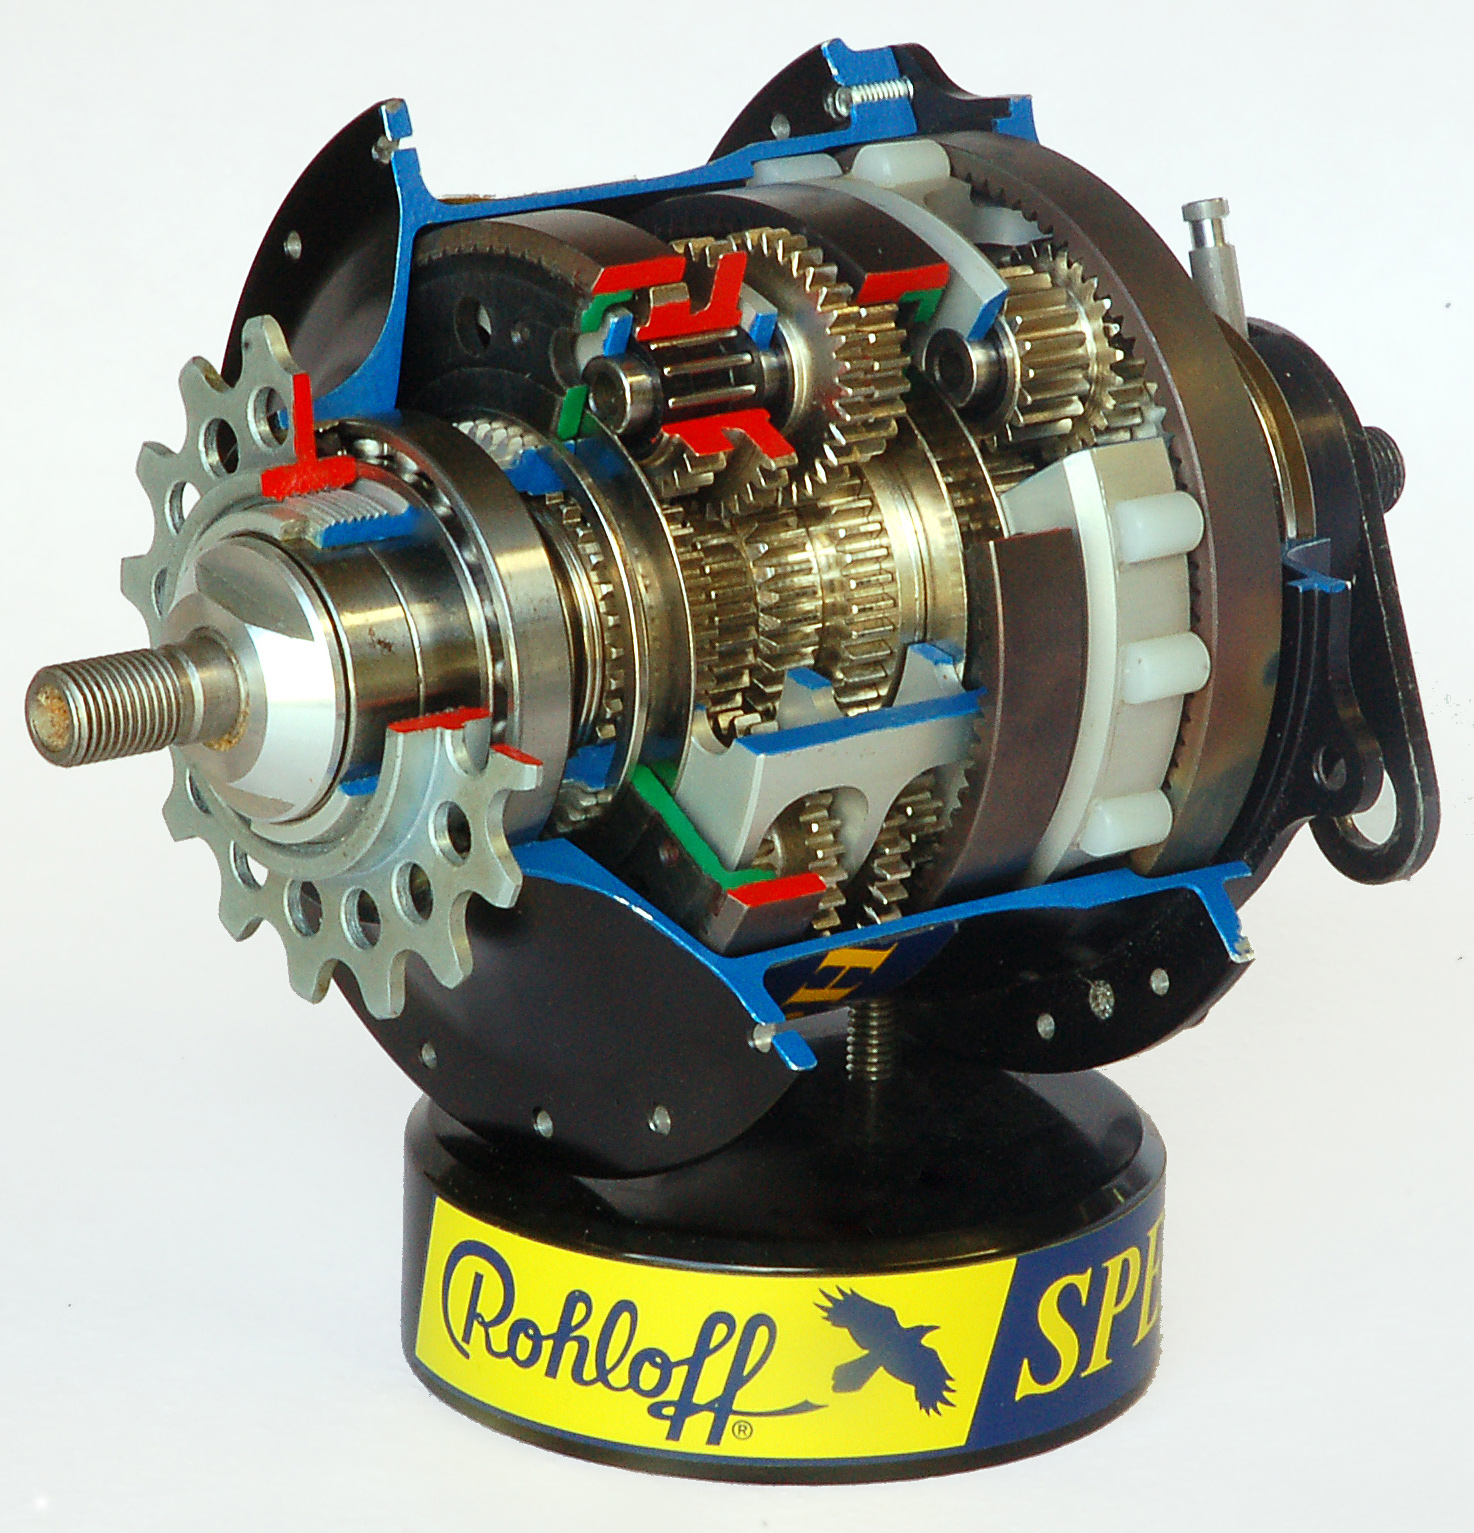 Rohloff-speedhub-500-14-by-RalfR-05.jpg